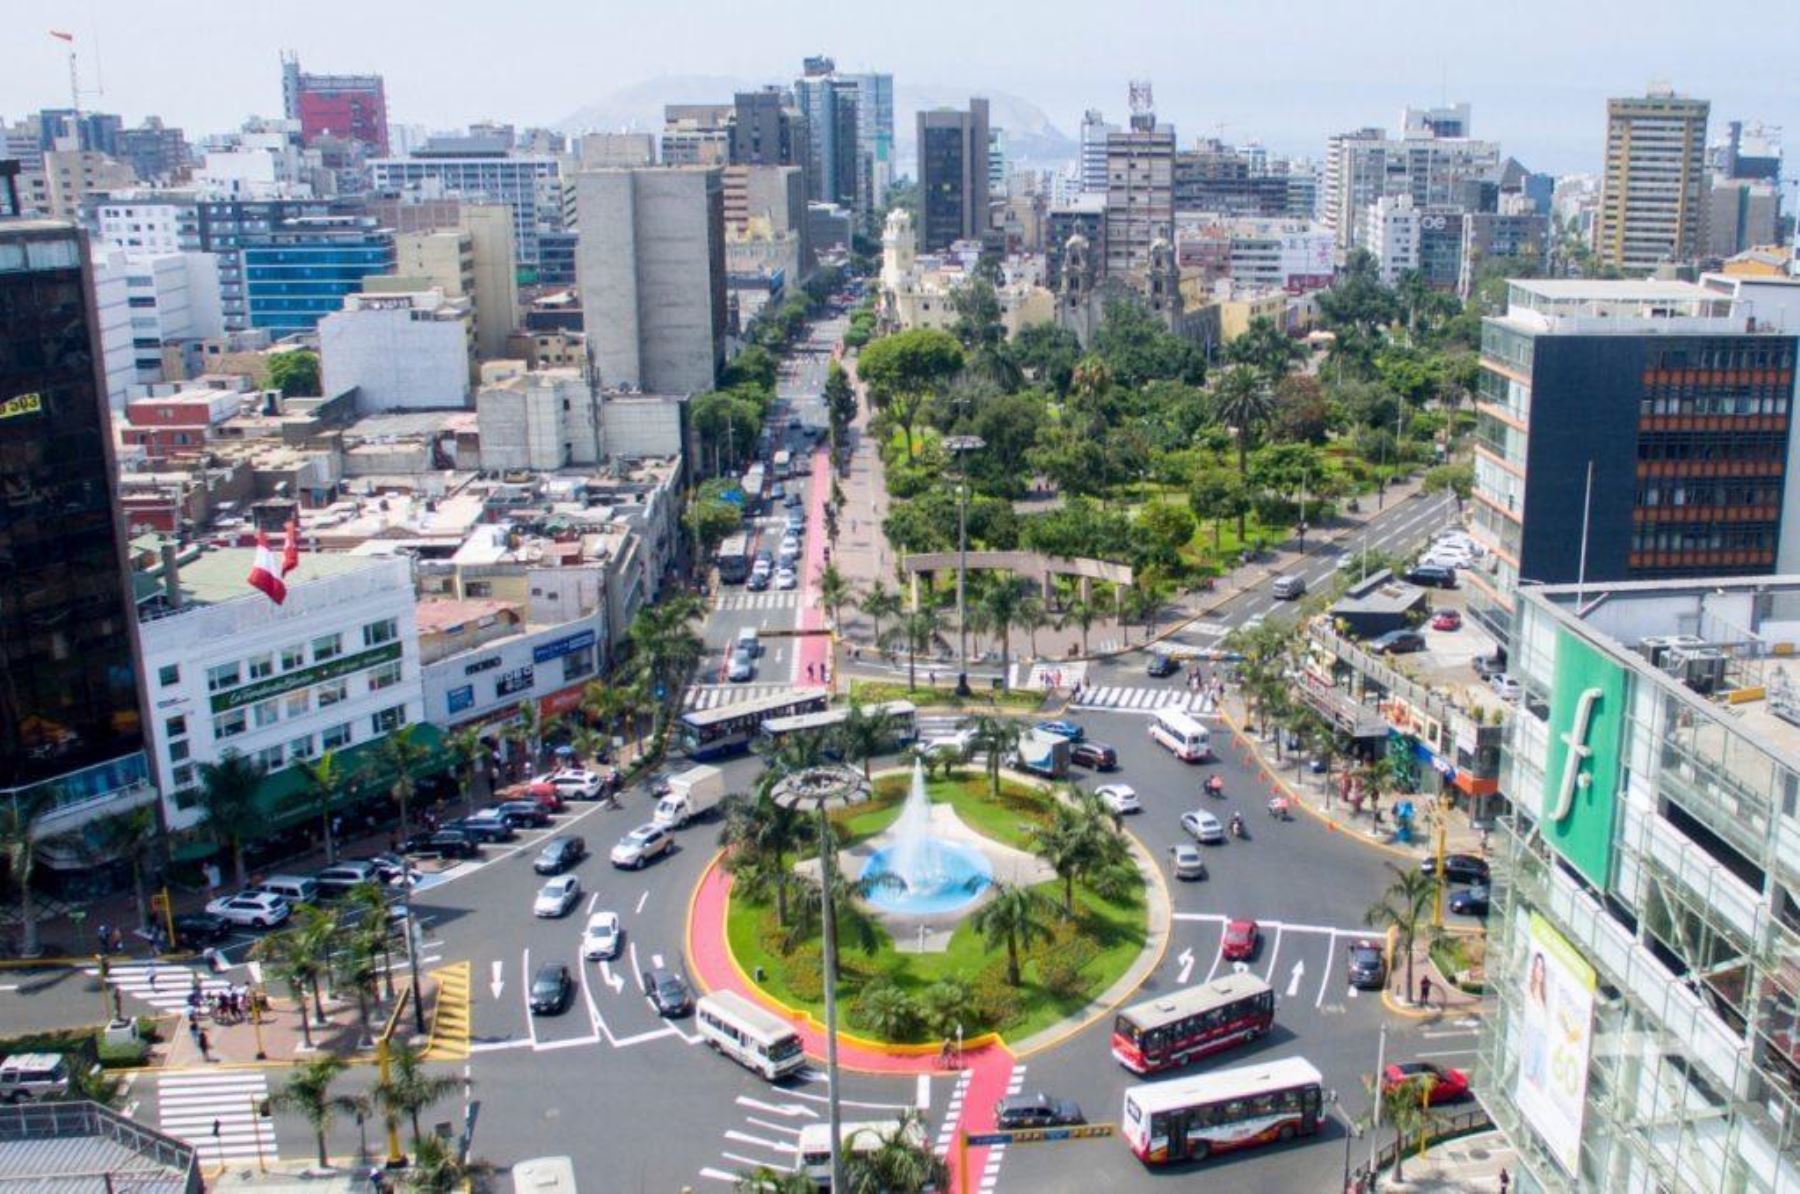 Miraflores es uno de los 43 distritos de Lima Metropolitana, con una extensión de 9.62 kilómetros cuadrados y una población aproximada de 100,000 habitantes. Foto: Difusión